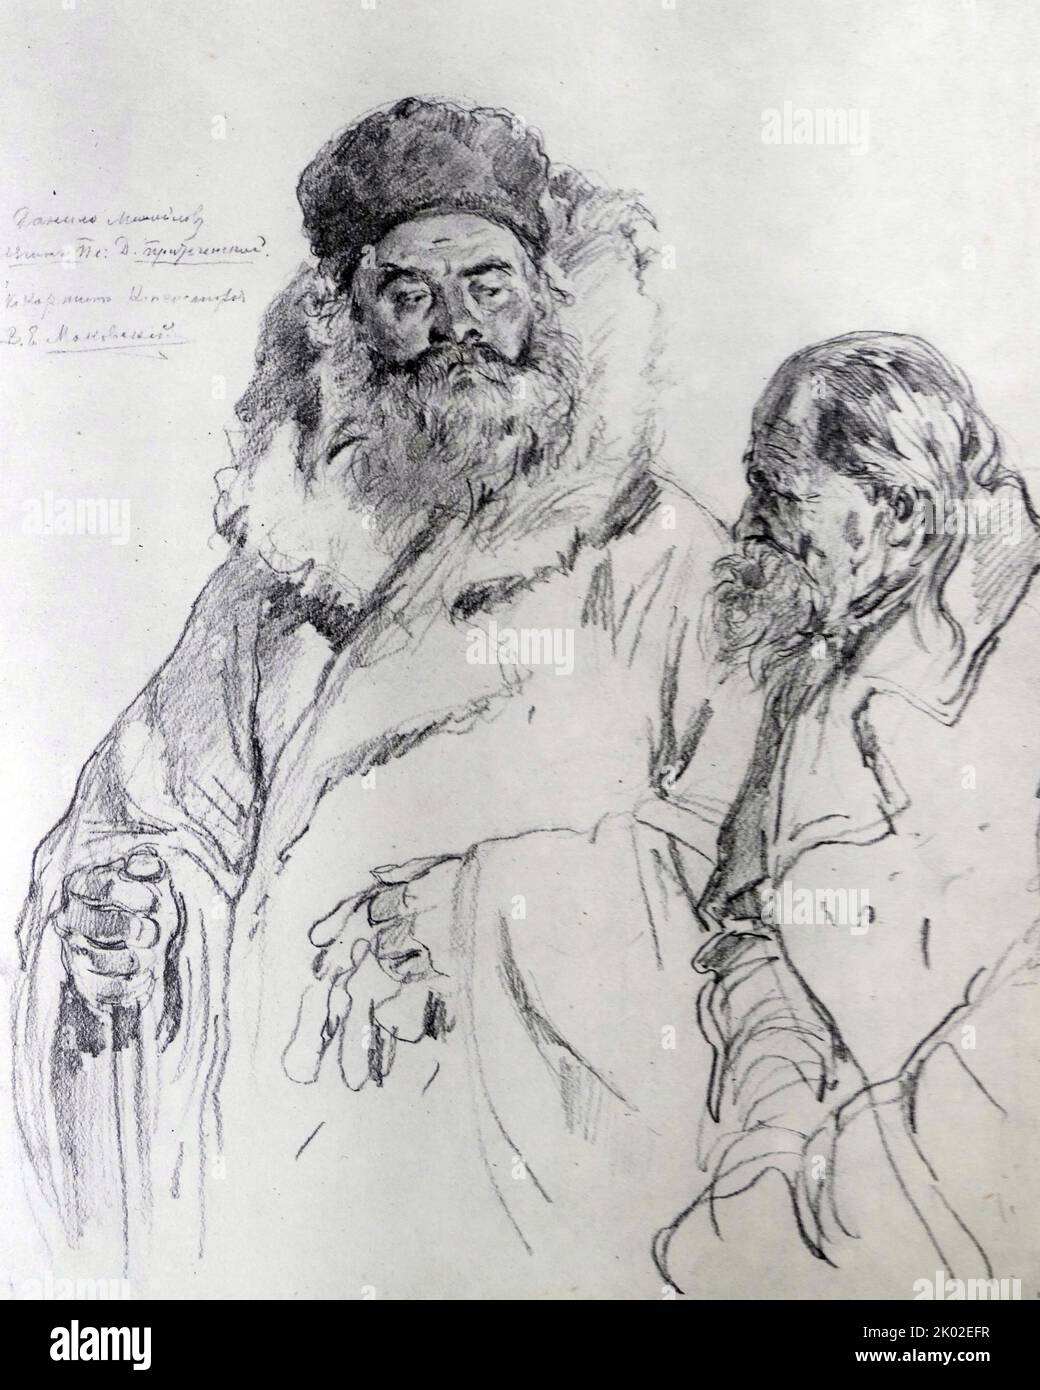 Skizze zweier Männer von Konstantin Jegorowitsch Makovsky (1839 - 1915); einflussreicher russischer Maler, der mit dem "Peredvischniki (Wanderer)" verbunden ist. Stockfoto